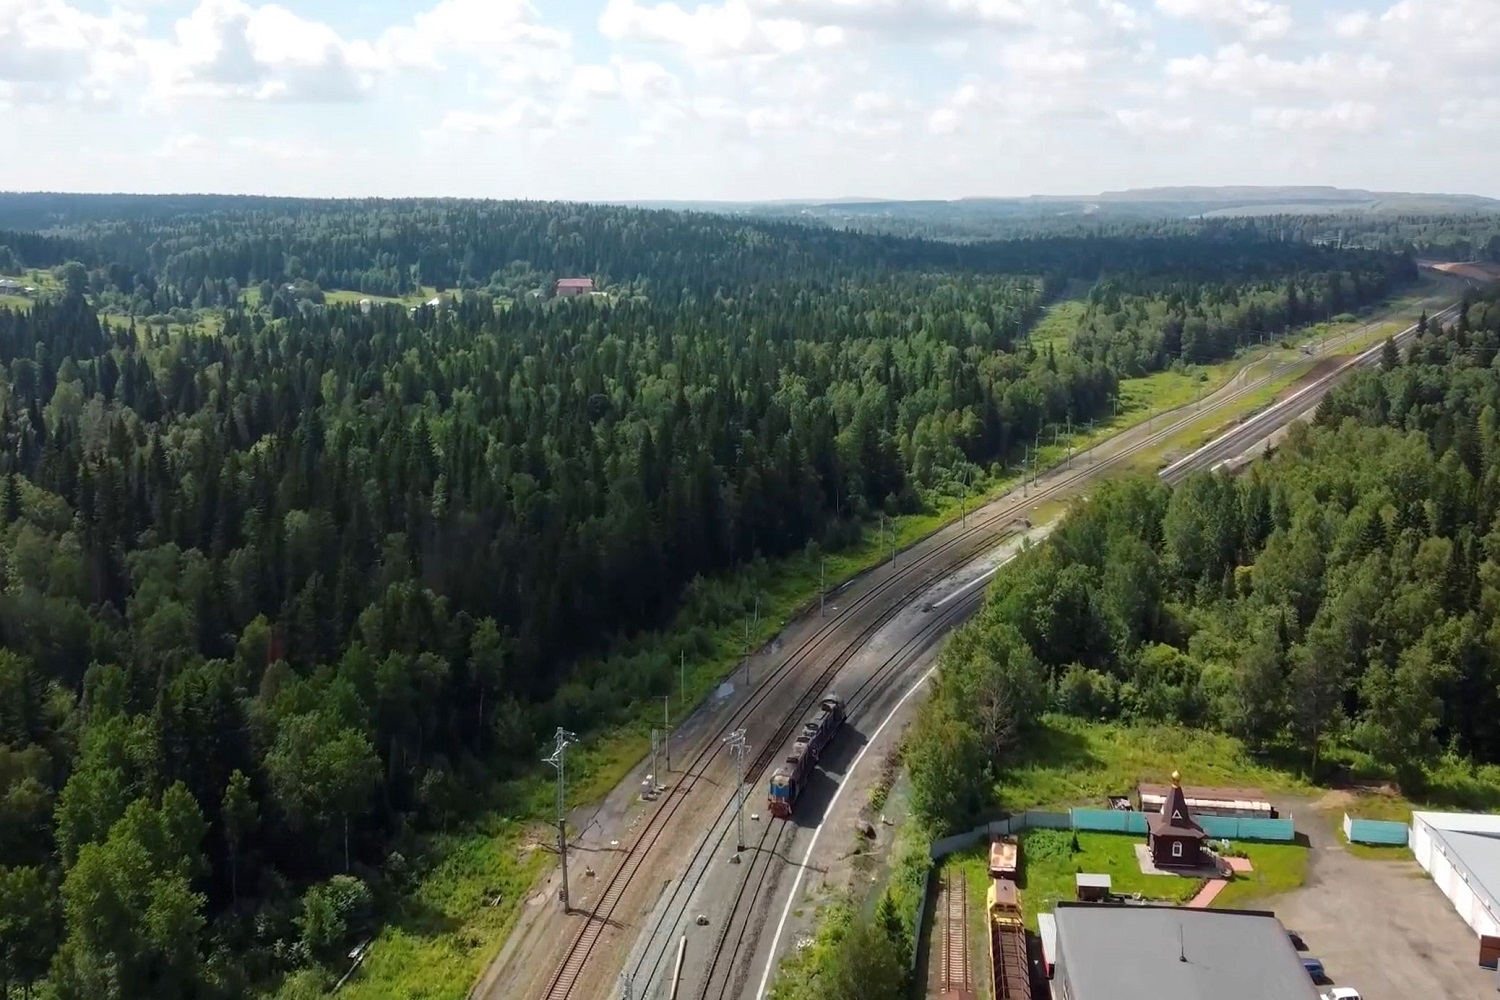 Построен новый железнодорожный перегон «Барзасское товарищество» - станция Бирюлинская